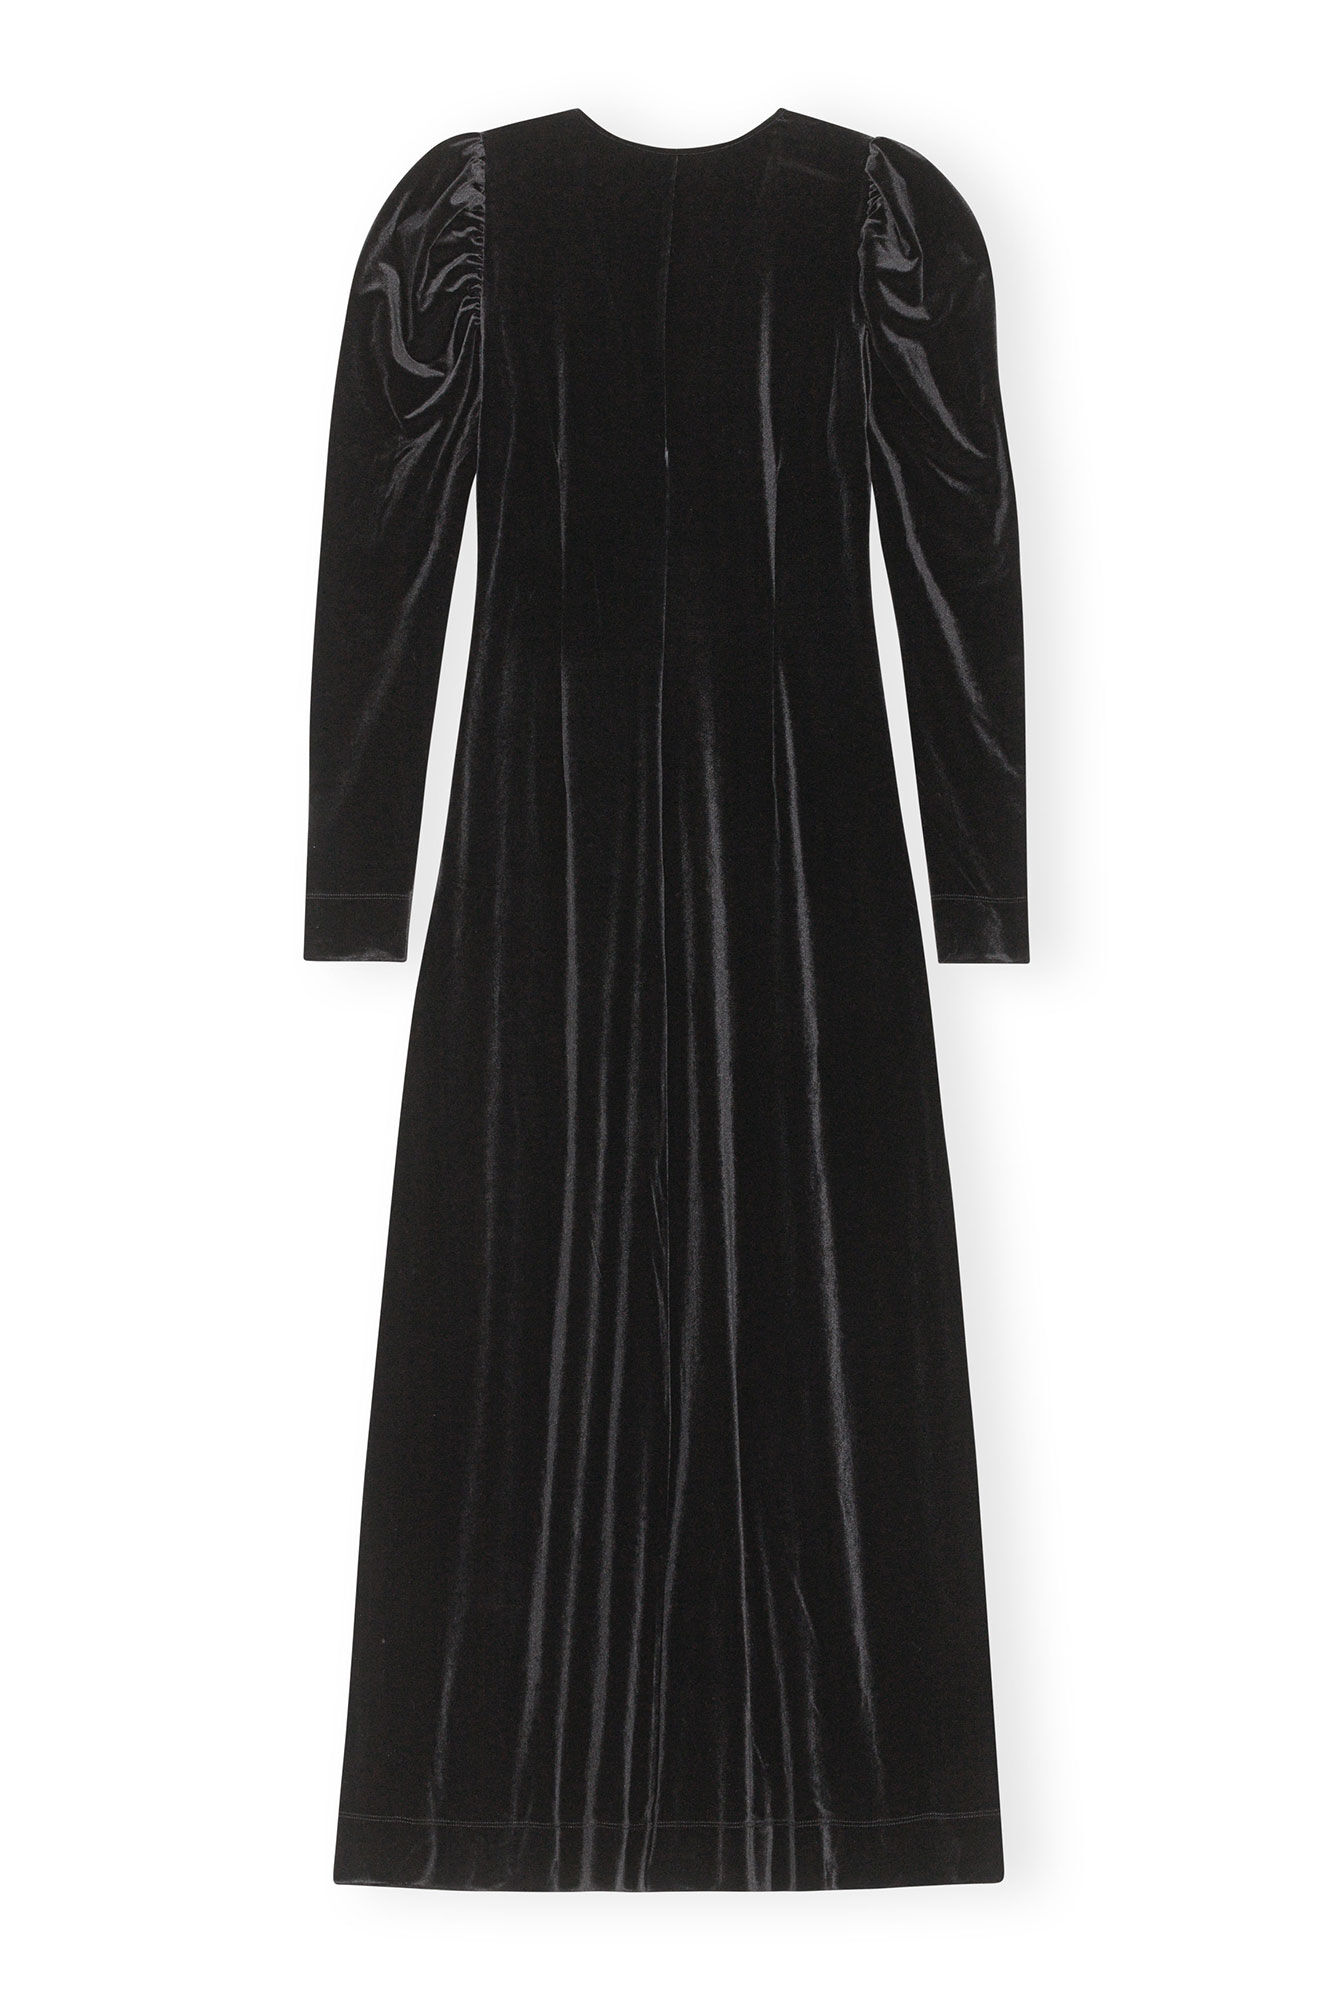 long sleeve black velvet dress